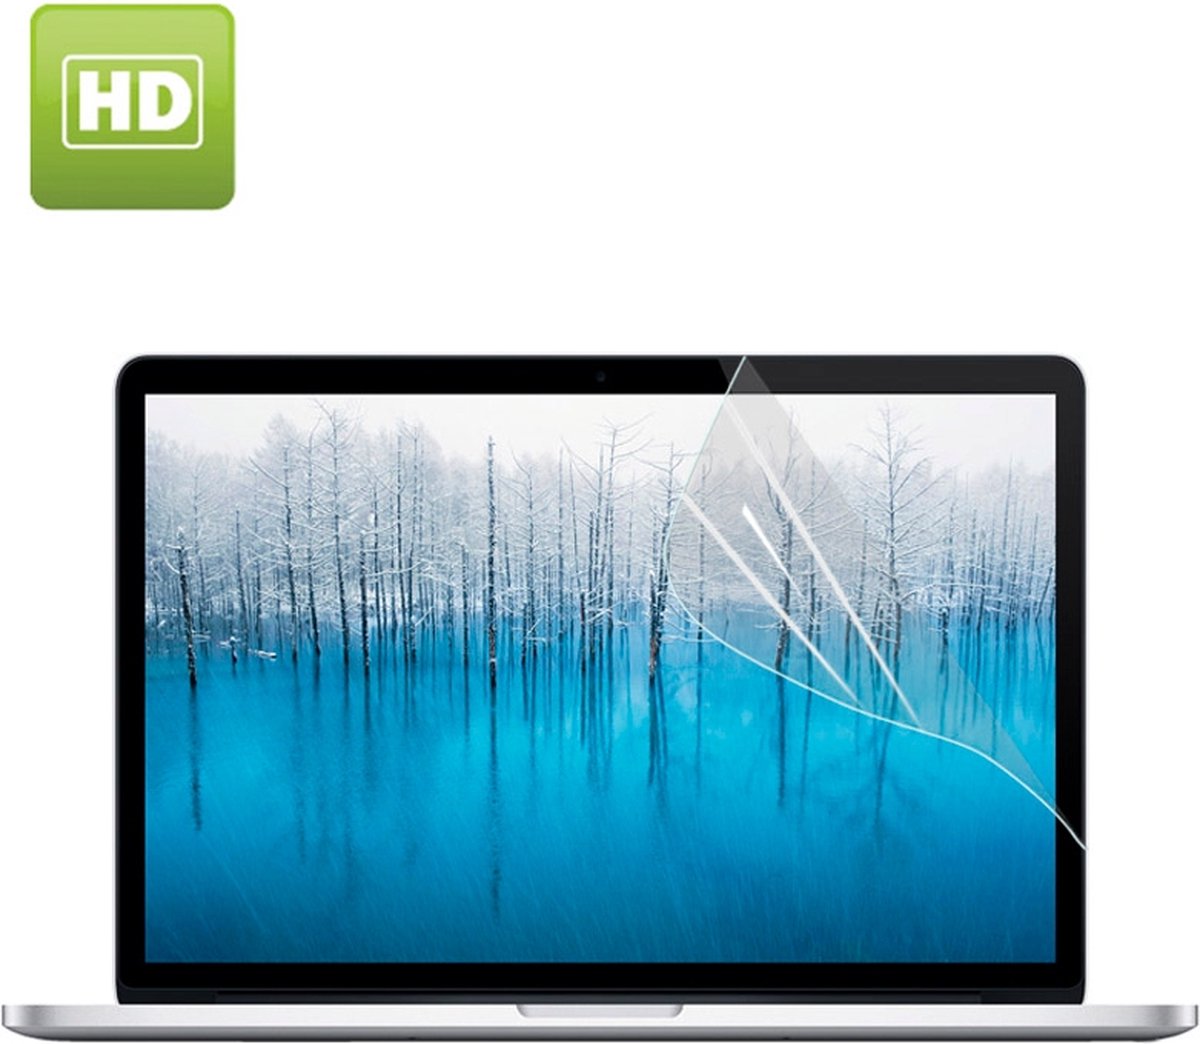 MacBook 15 inch Pro screen protector